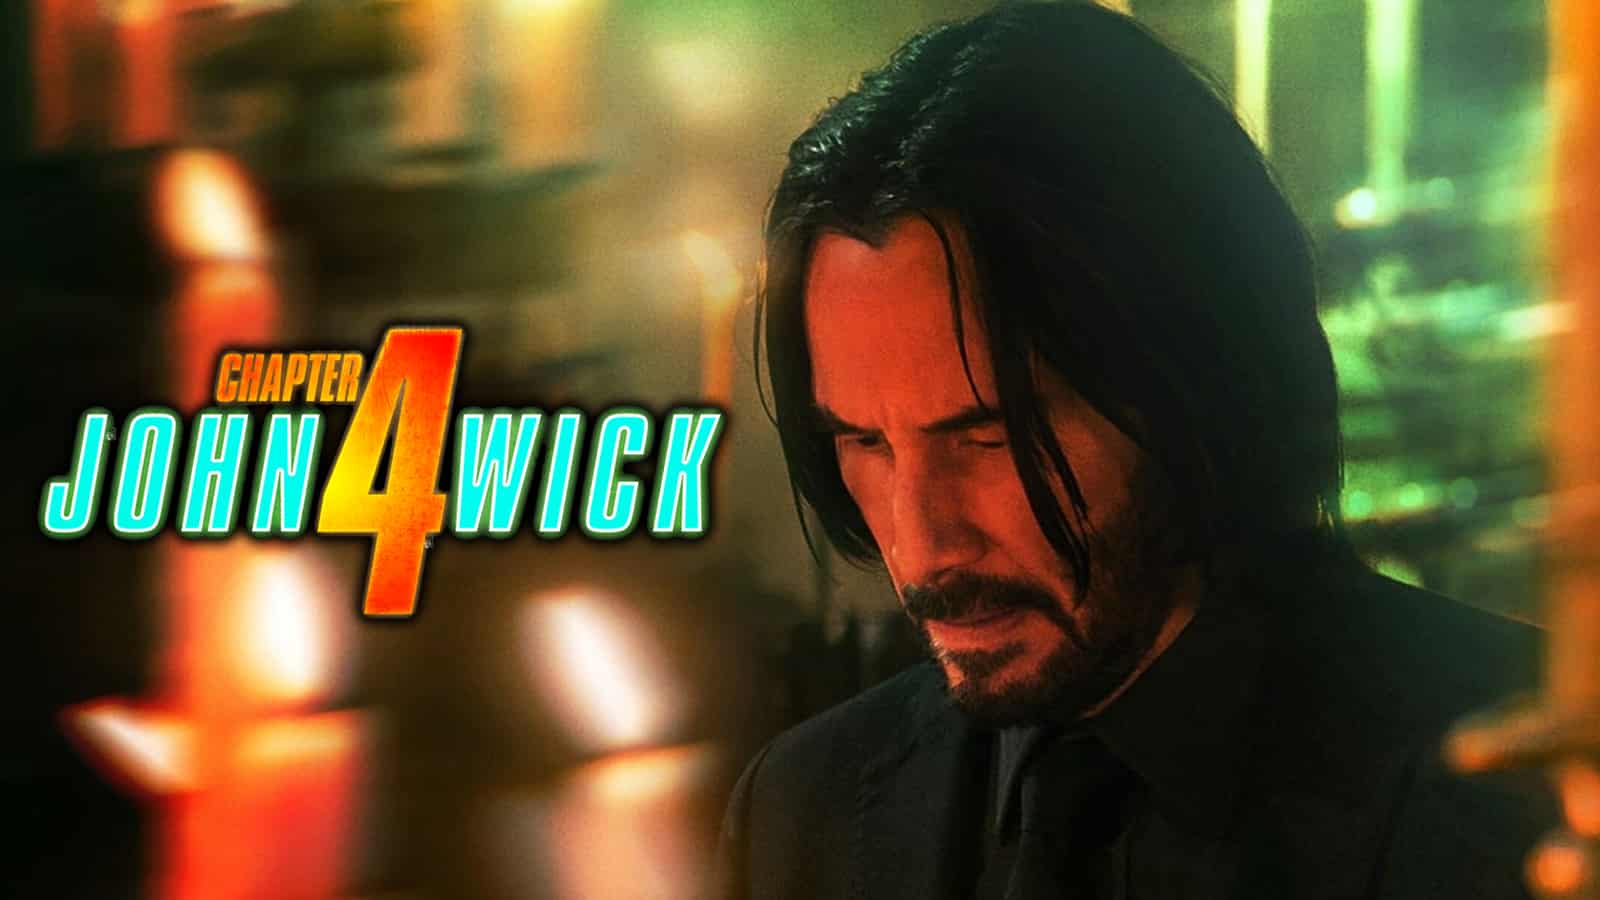 John Wick: Chapter 4” ganha seu primeiro teaser trailer